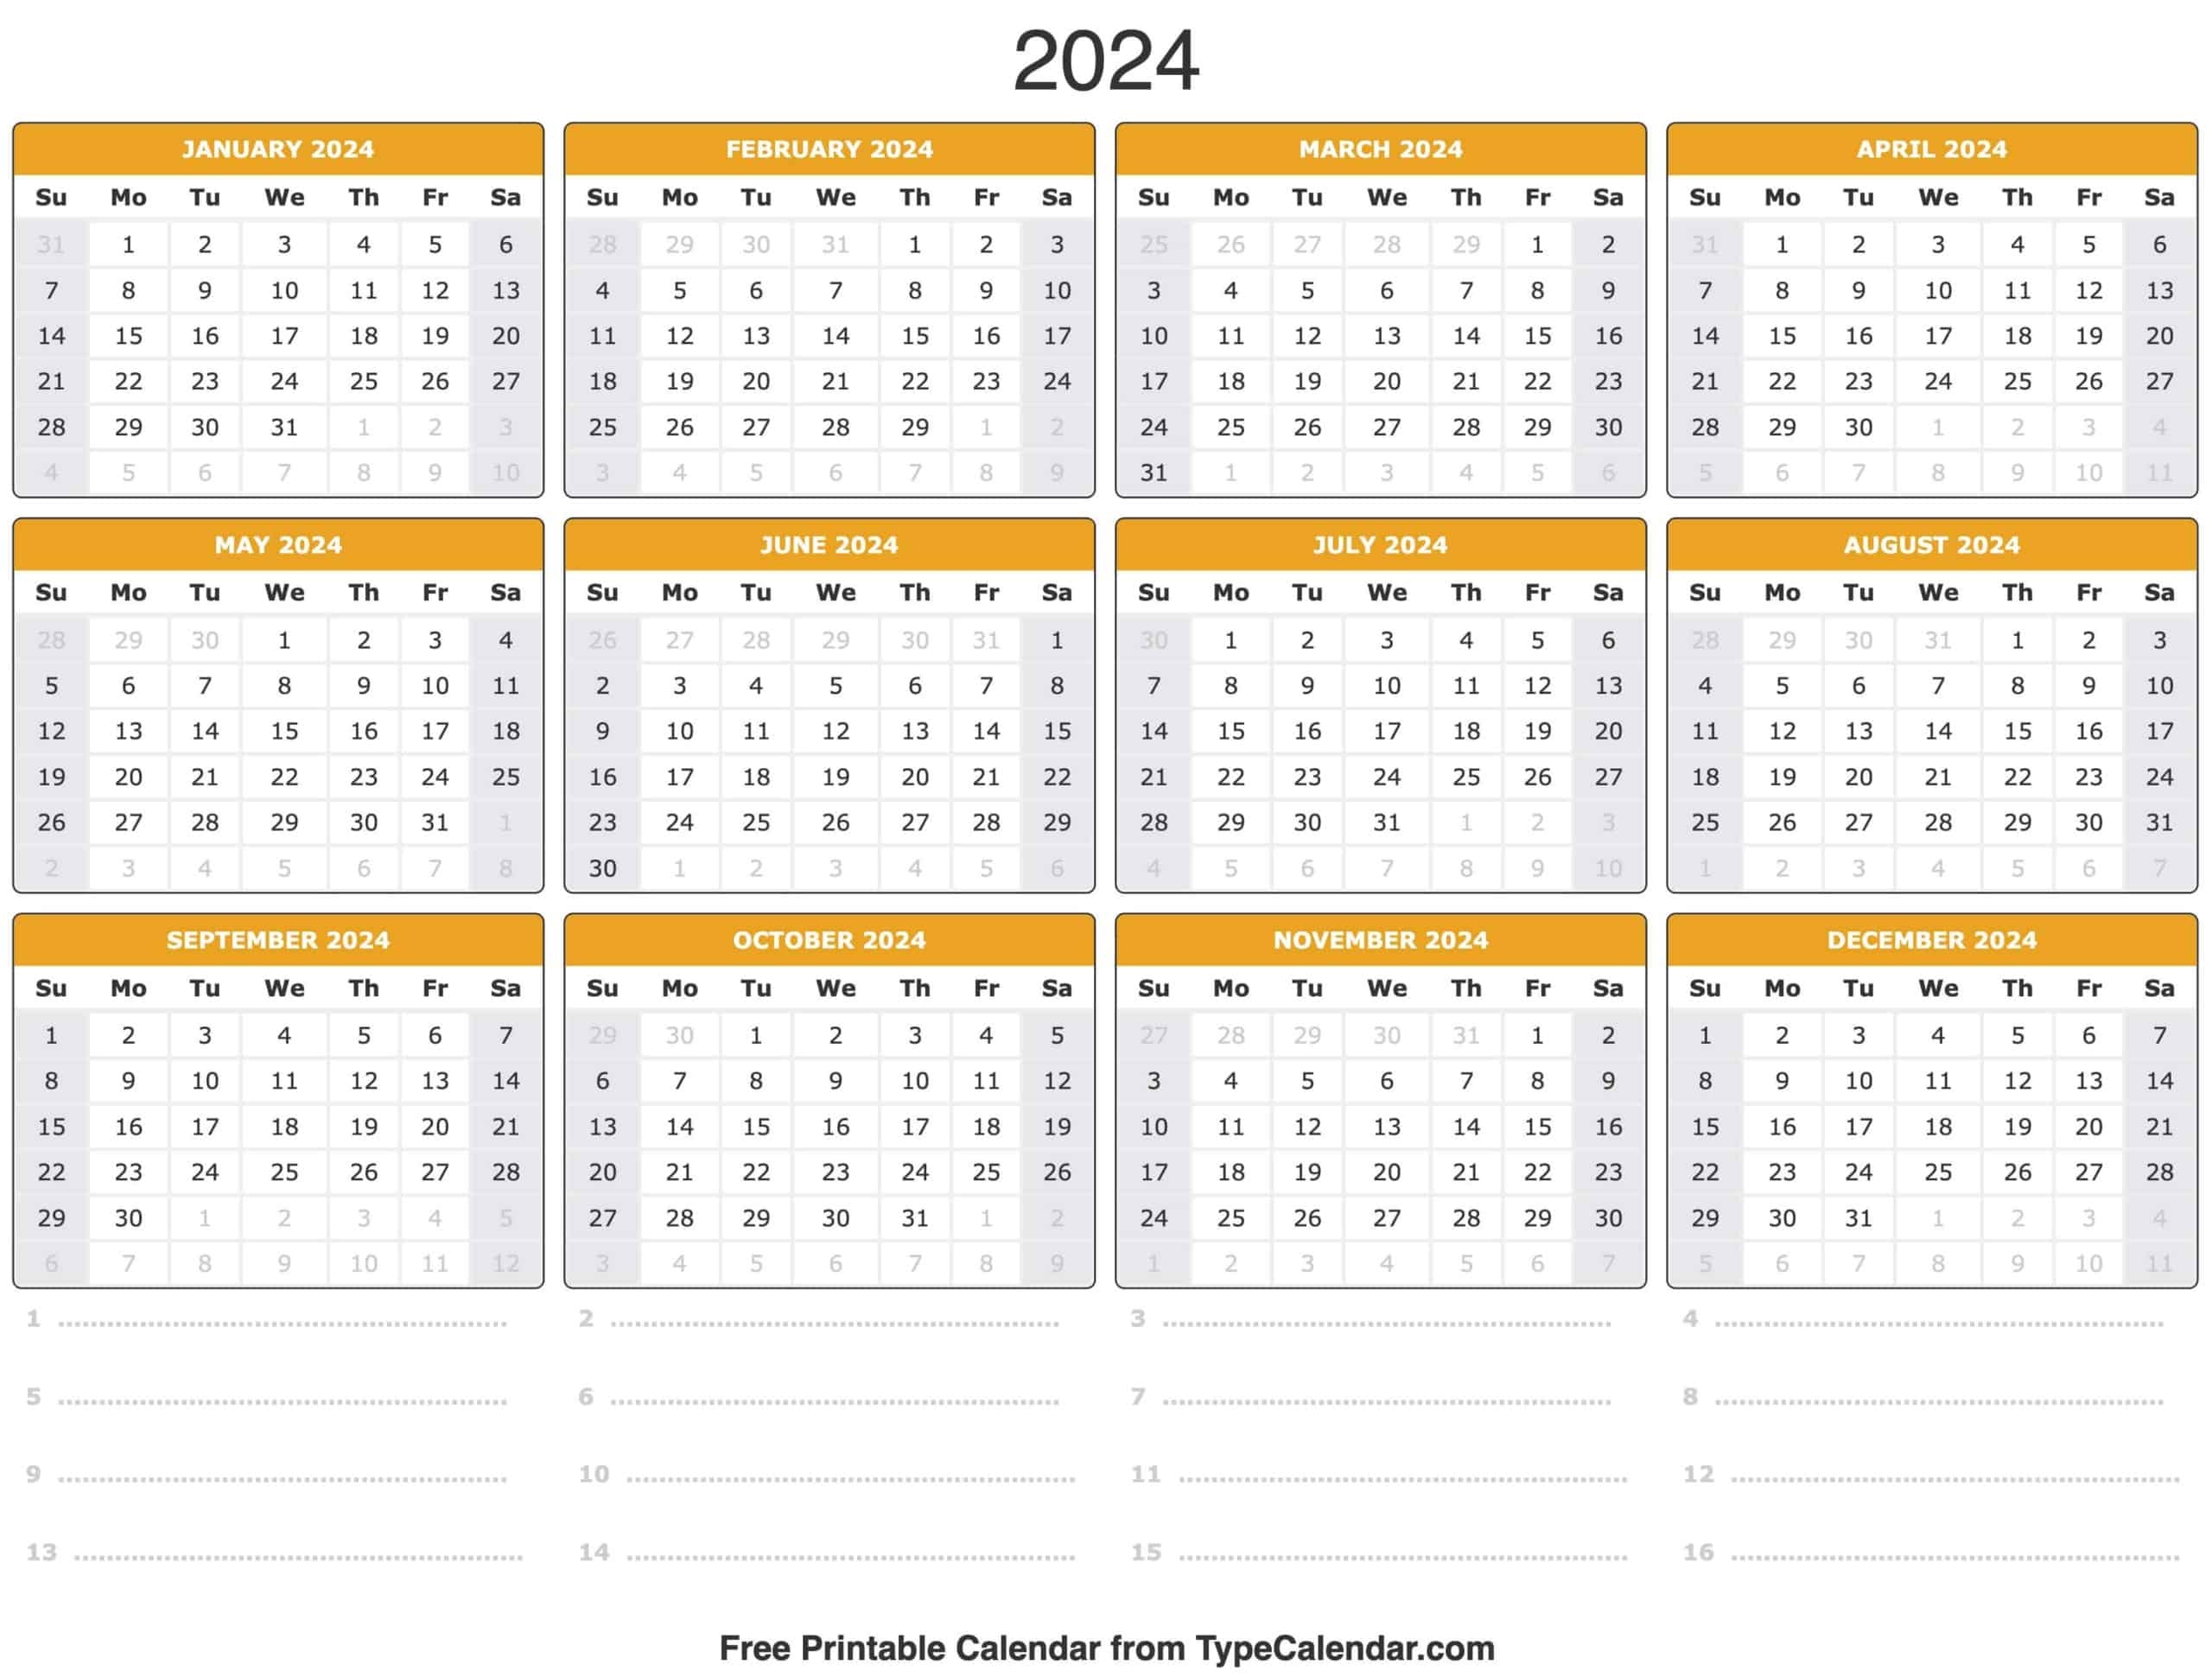 2024 Calendar: Free Printable Calendar With Holidays intended for Free Printable Calendar 2024 With Space To Write